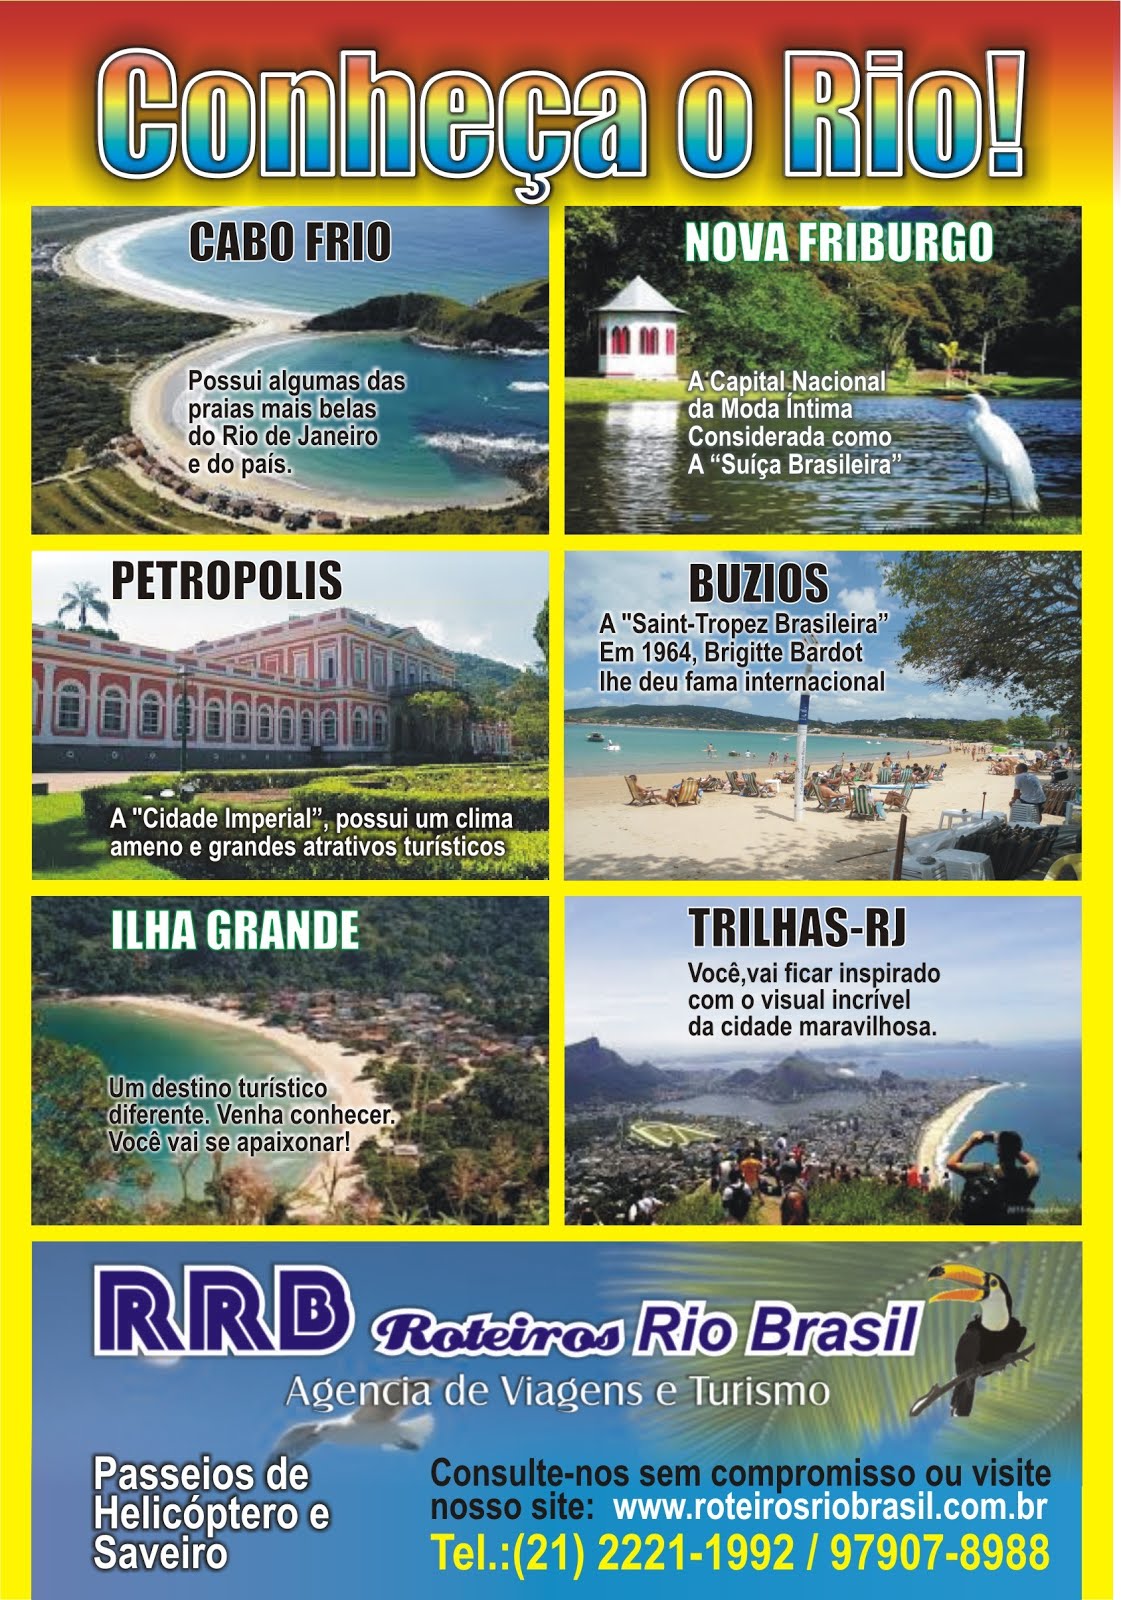 www.roteirosriobrasil.com.br